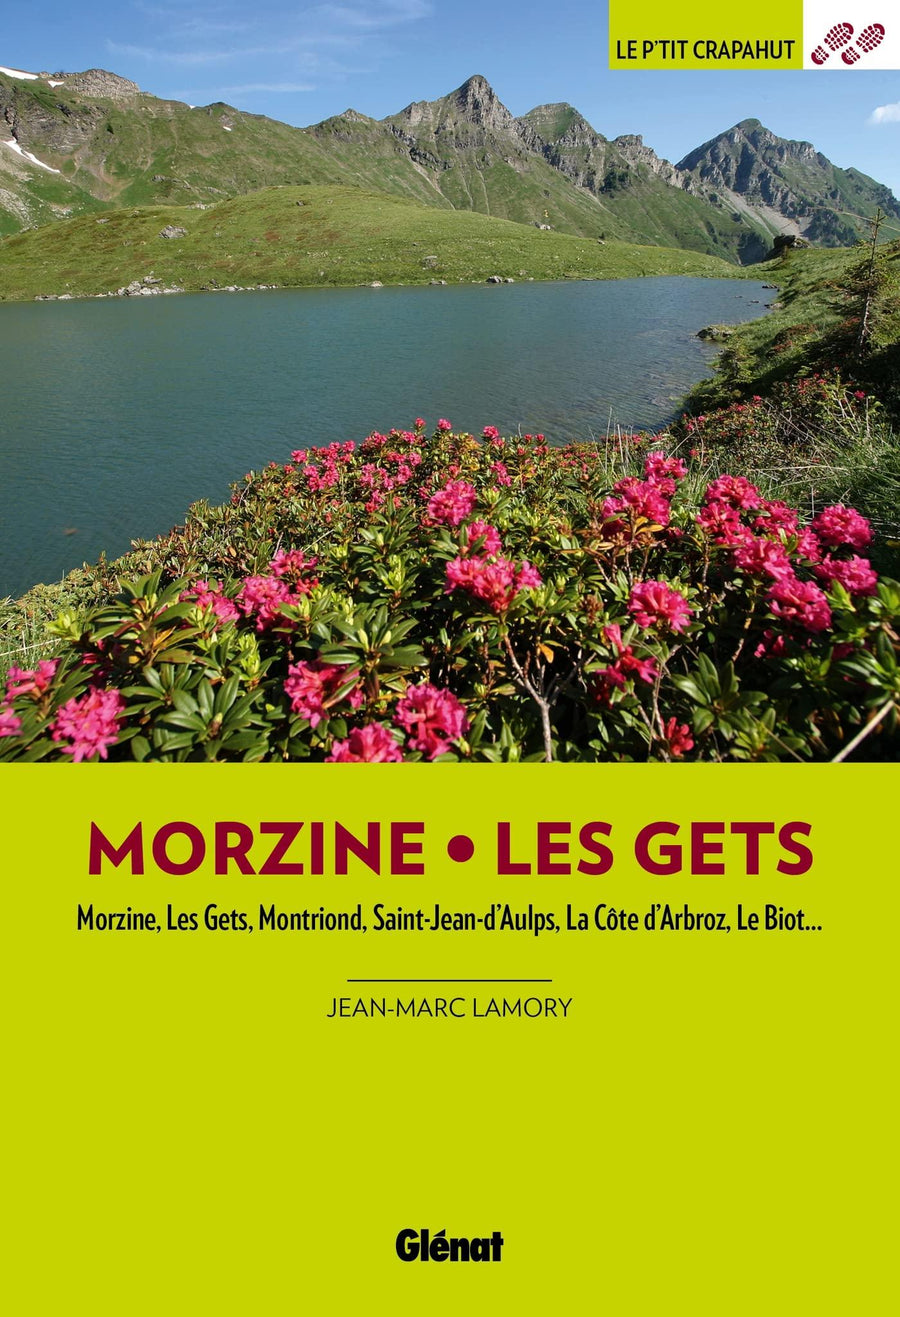 Guide de balades - Morzine, Les Gets | Glénat - P'tit Crapahut guide de randonnée Glénat 